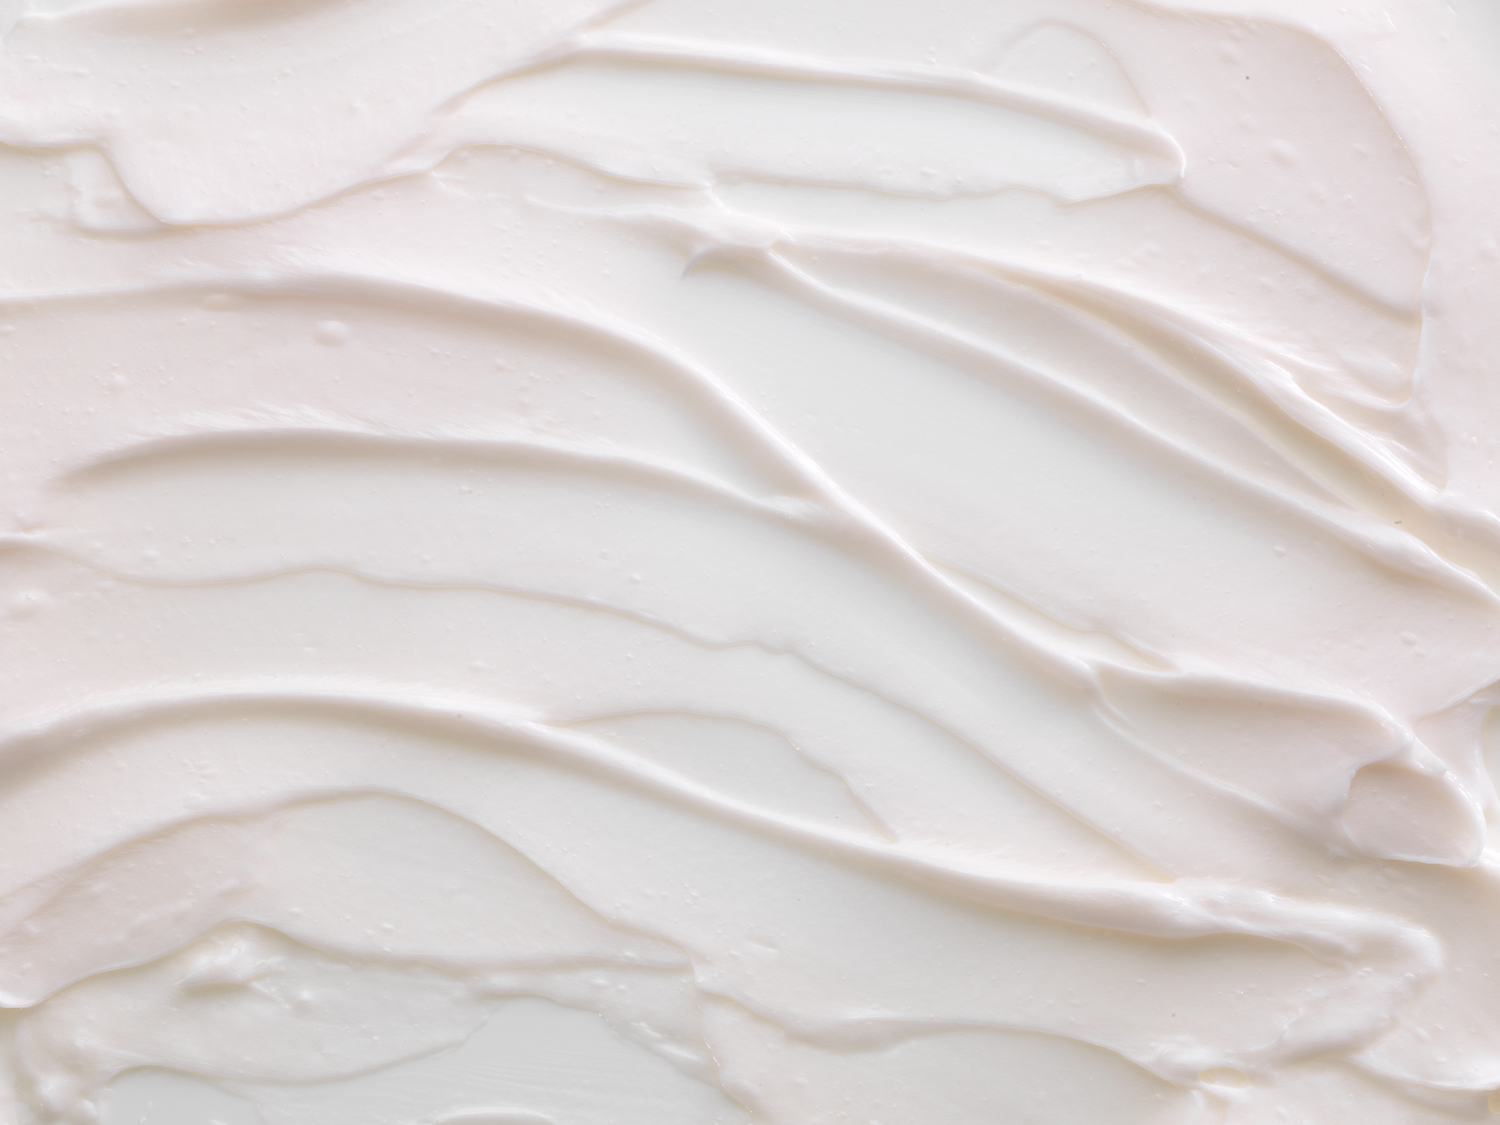 Bio-identical Lipid-replenishing Cream